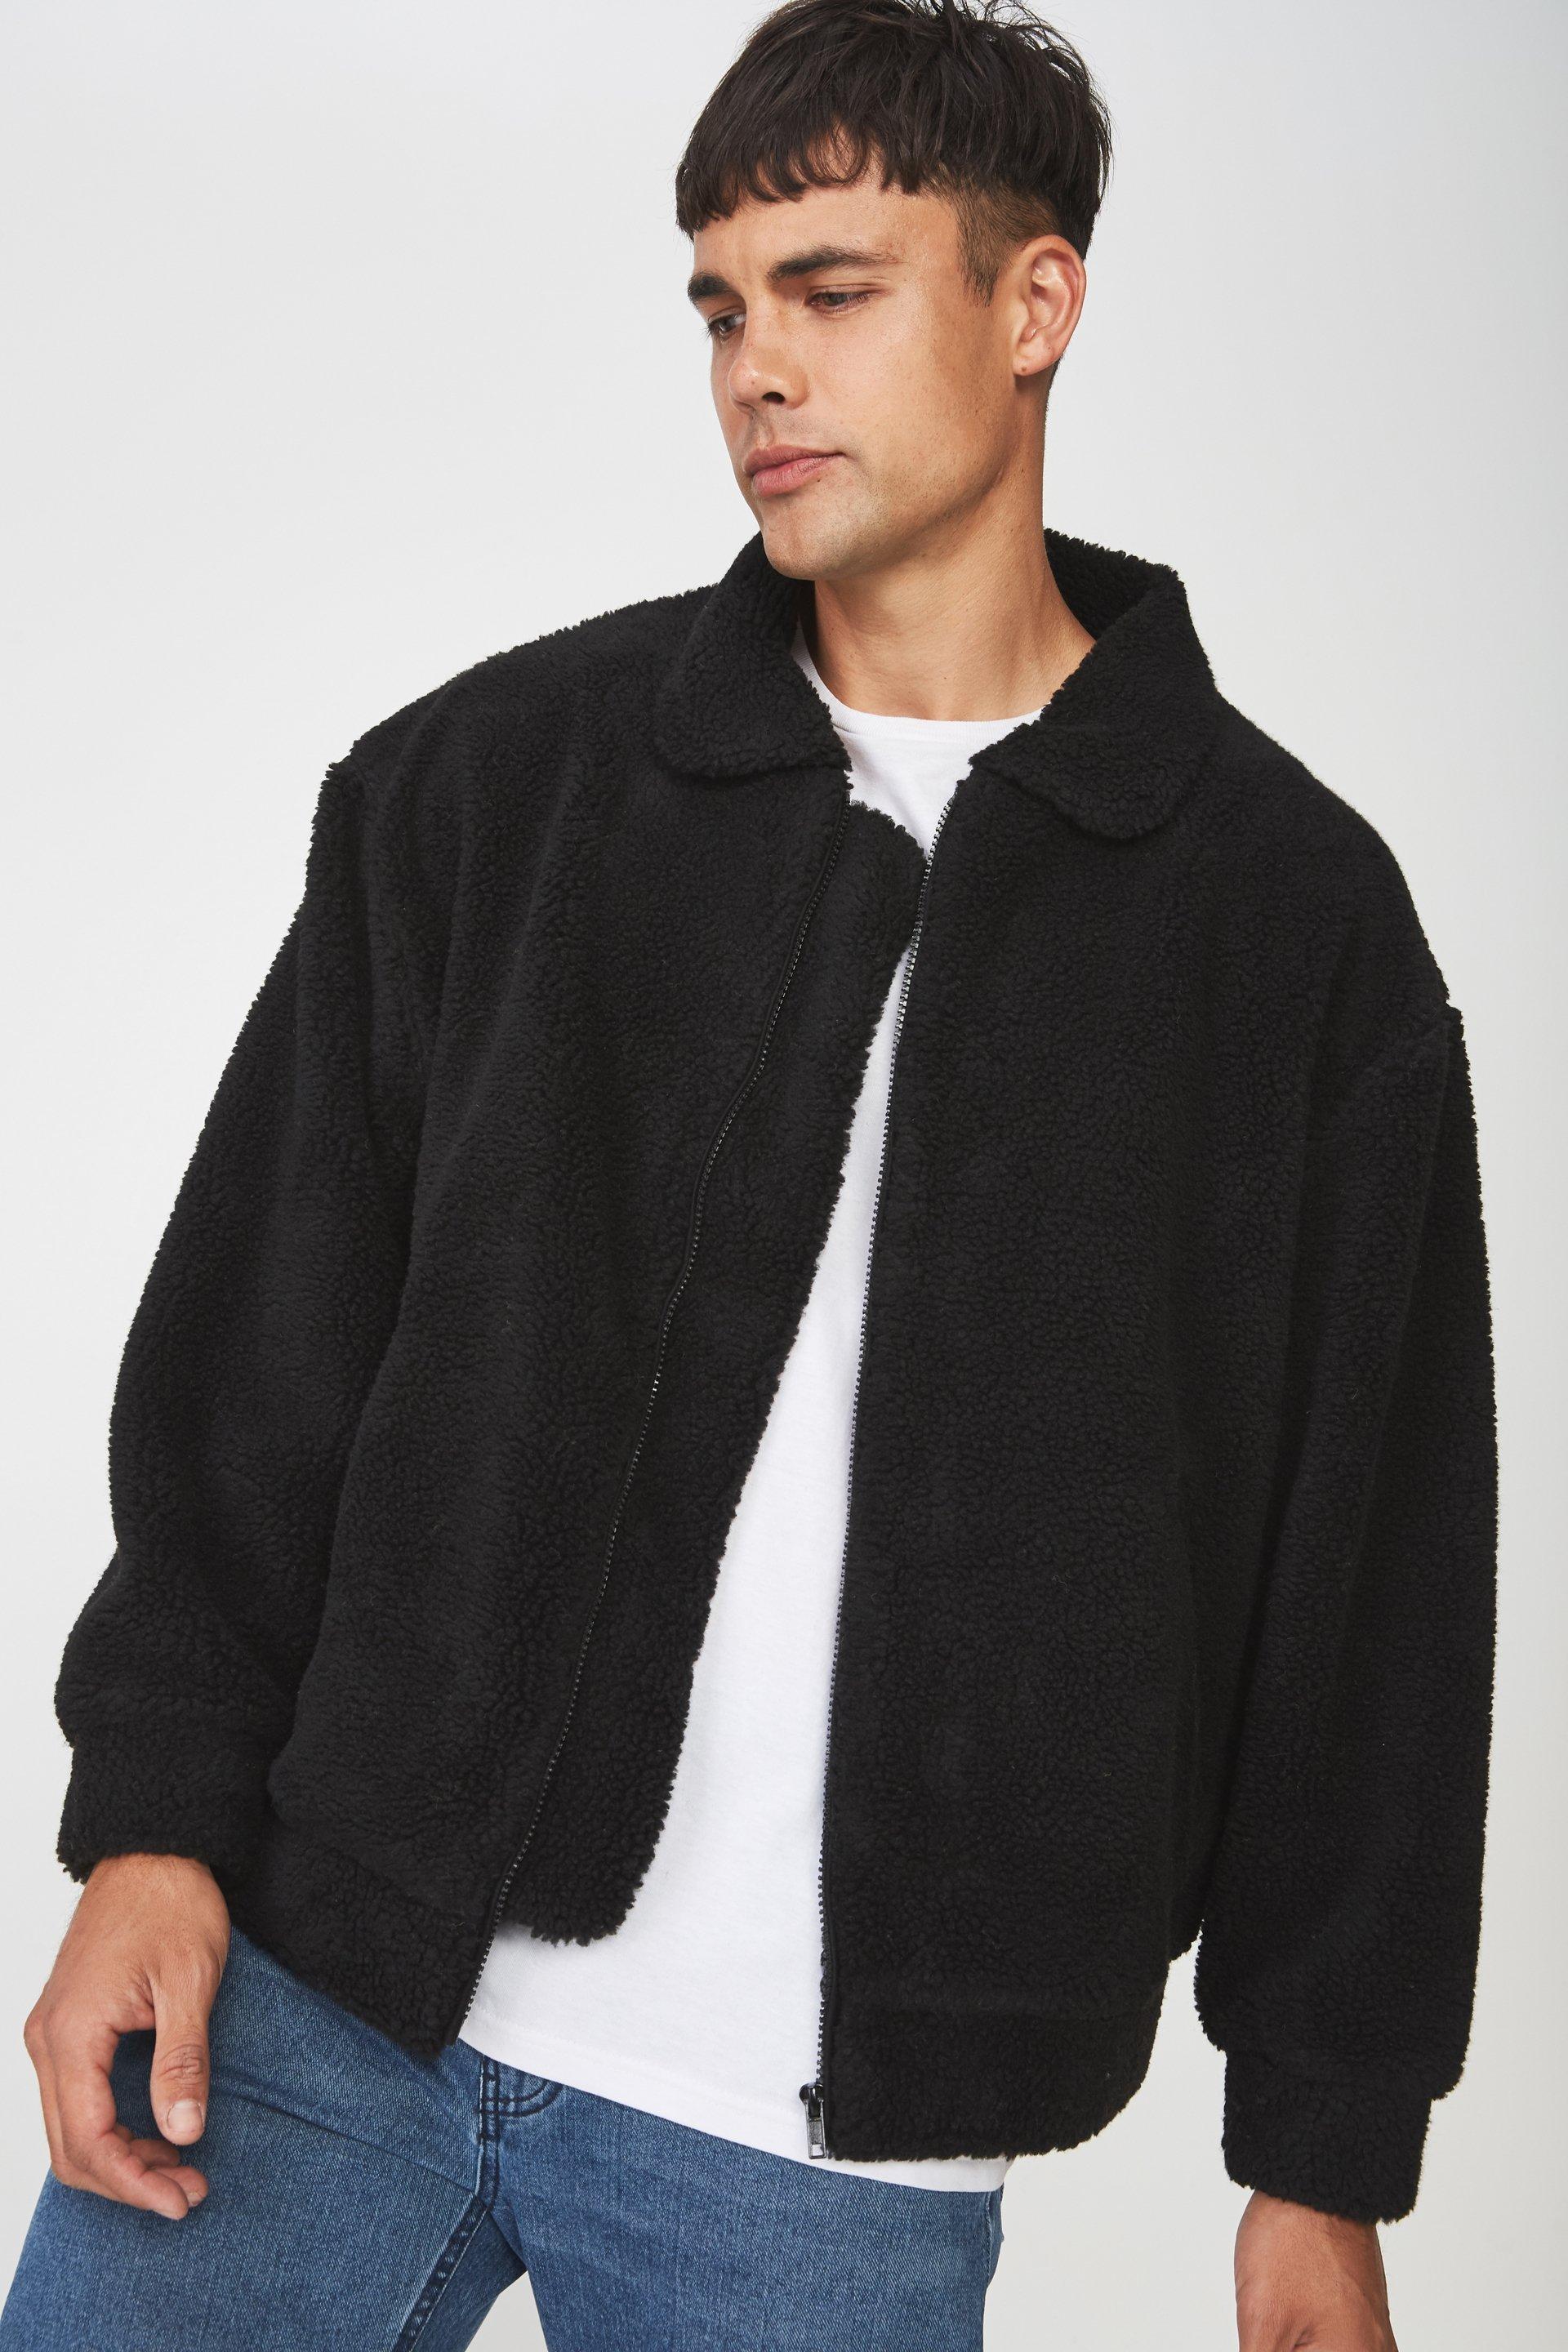 Teddy fleece zip up - black Cotton On Jackets | Superbalist.com